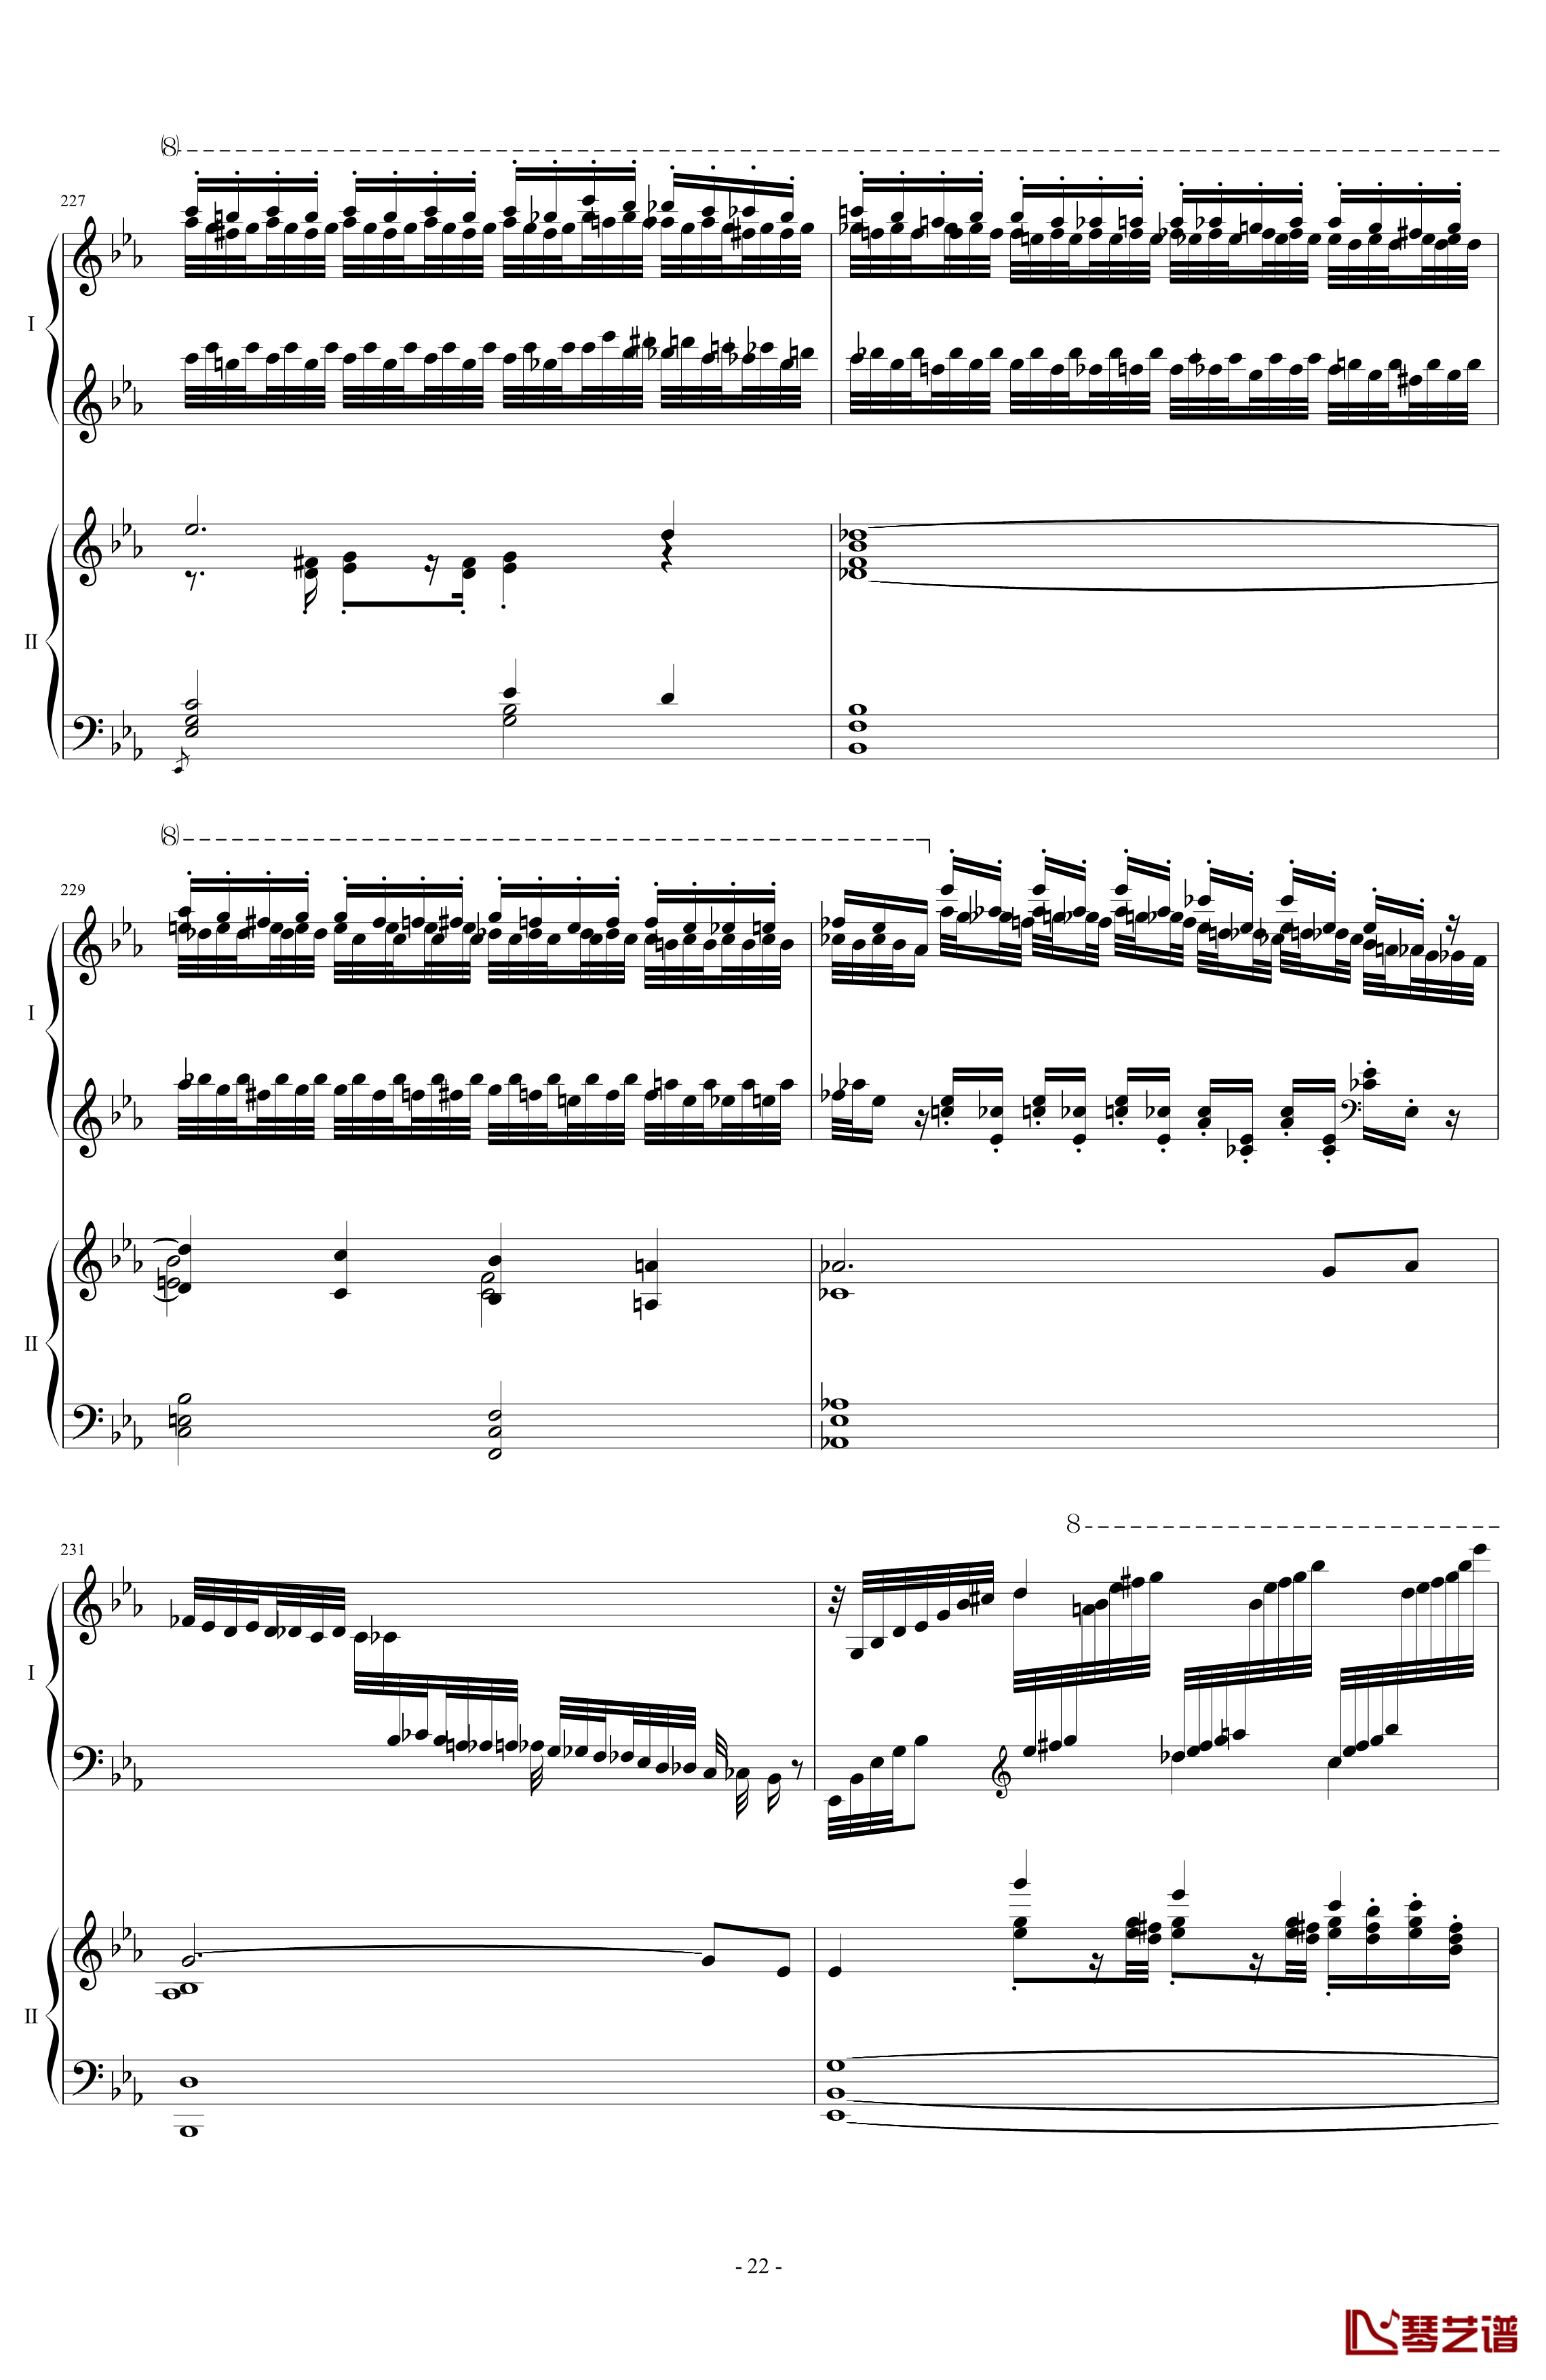 拉三第三乐章41页双钢琴钢琴谱-最难钢琴曲-拉赫马尼若夫22